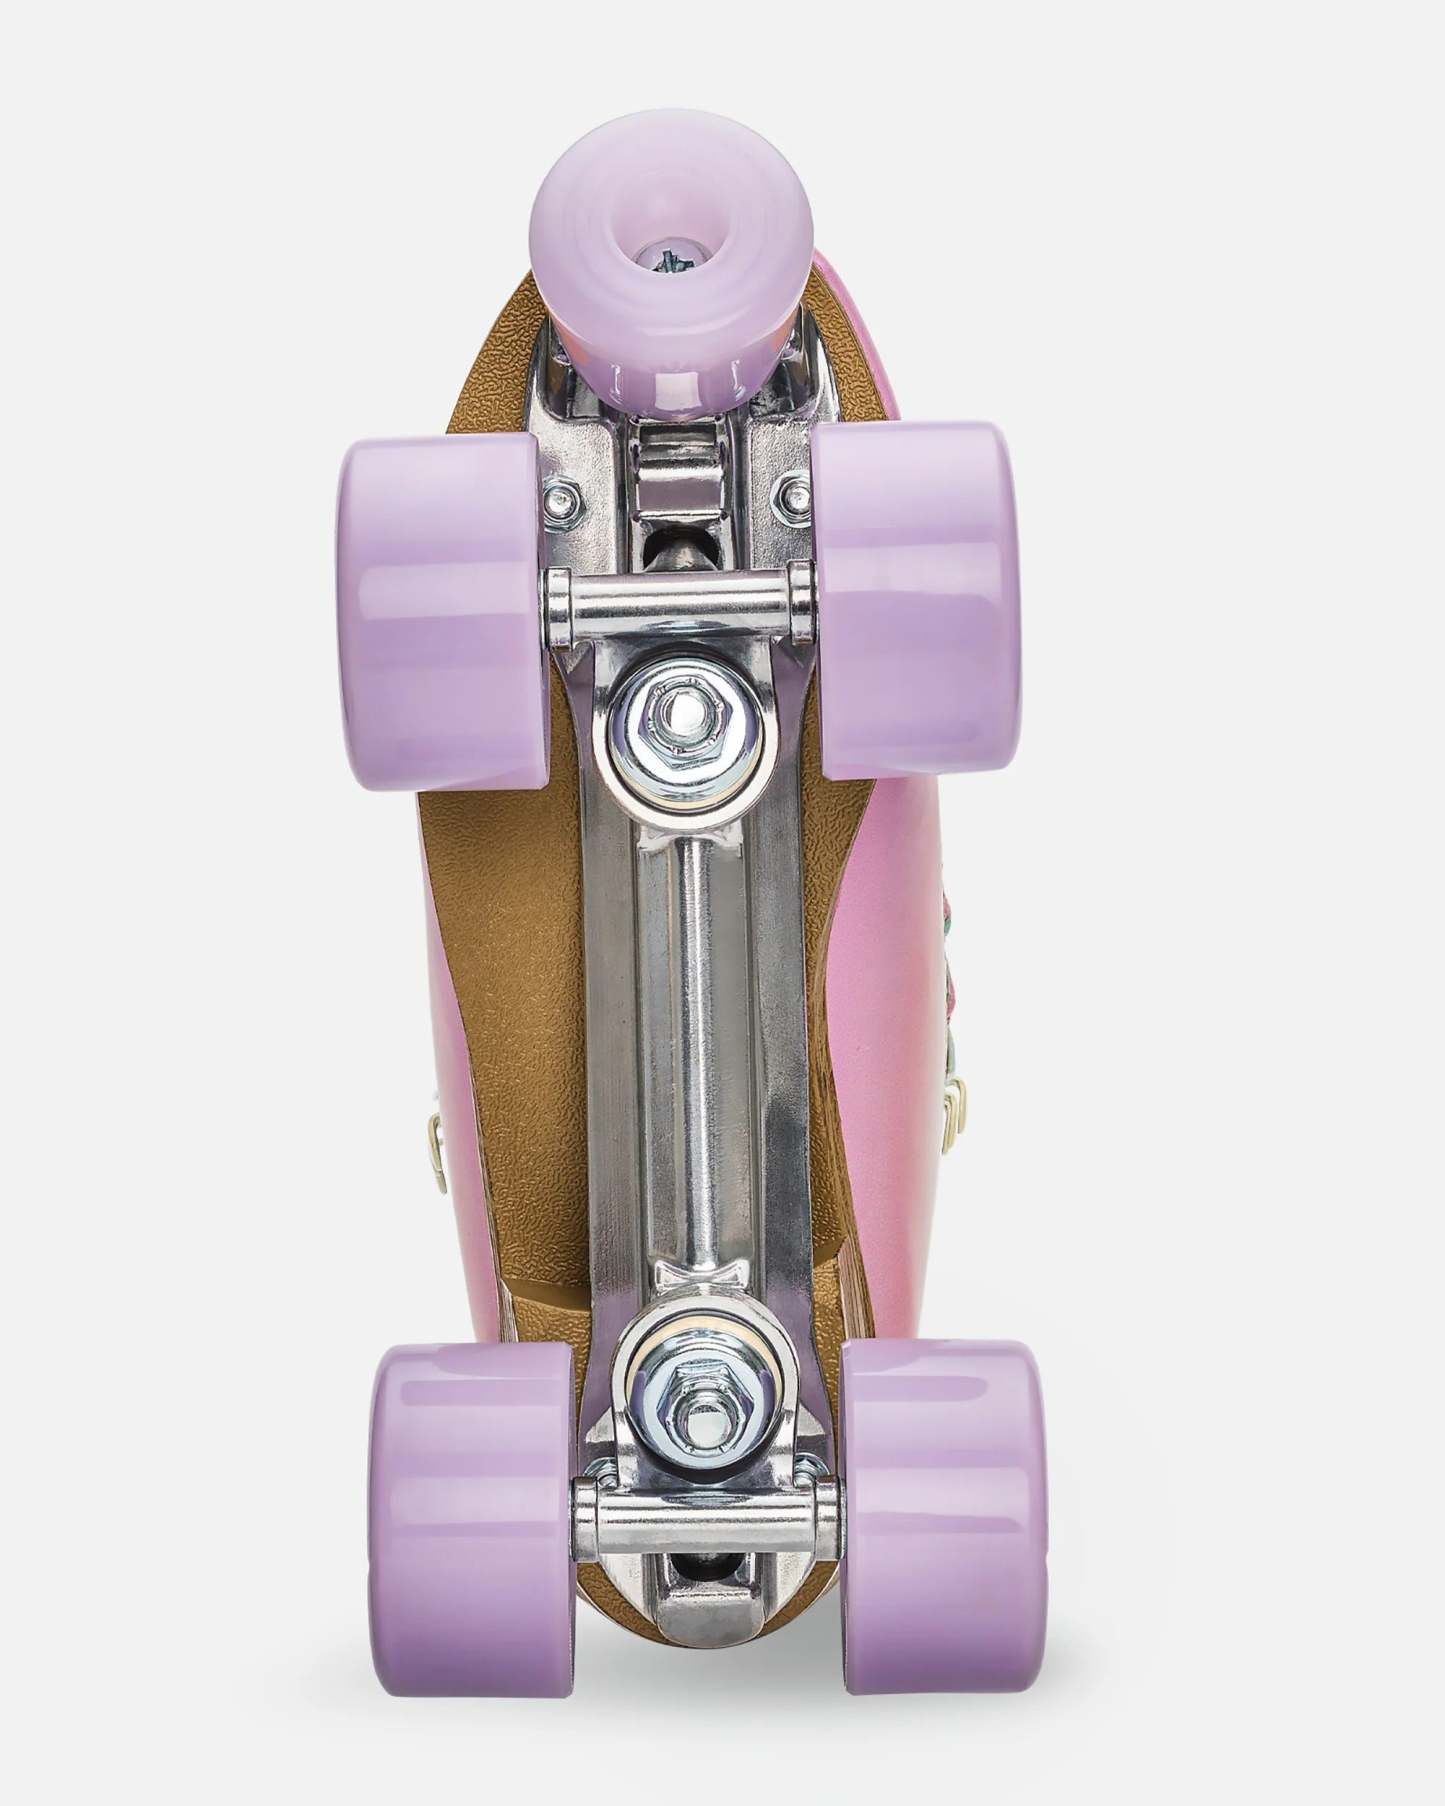 IMPALA - Pastel Fade Quad Roller Skates